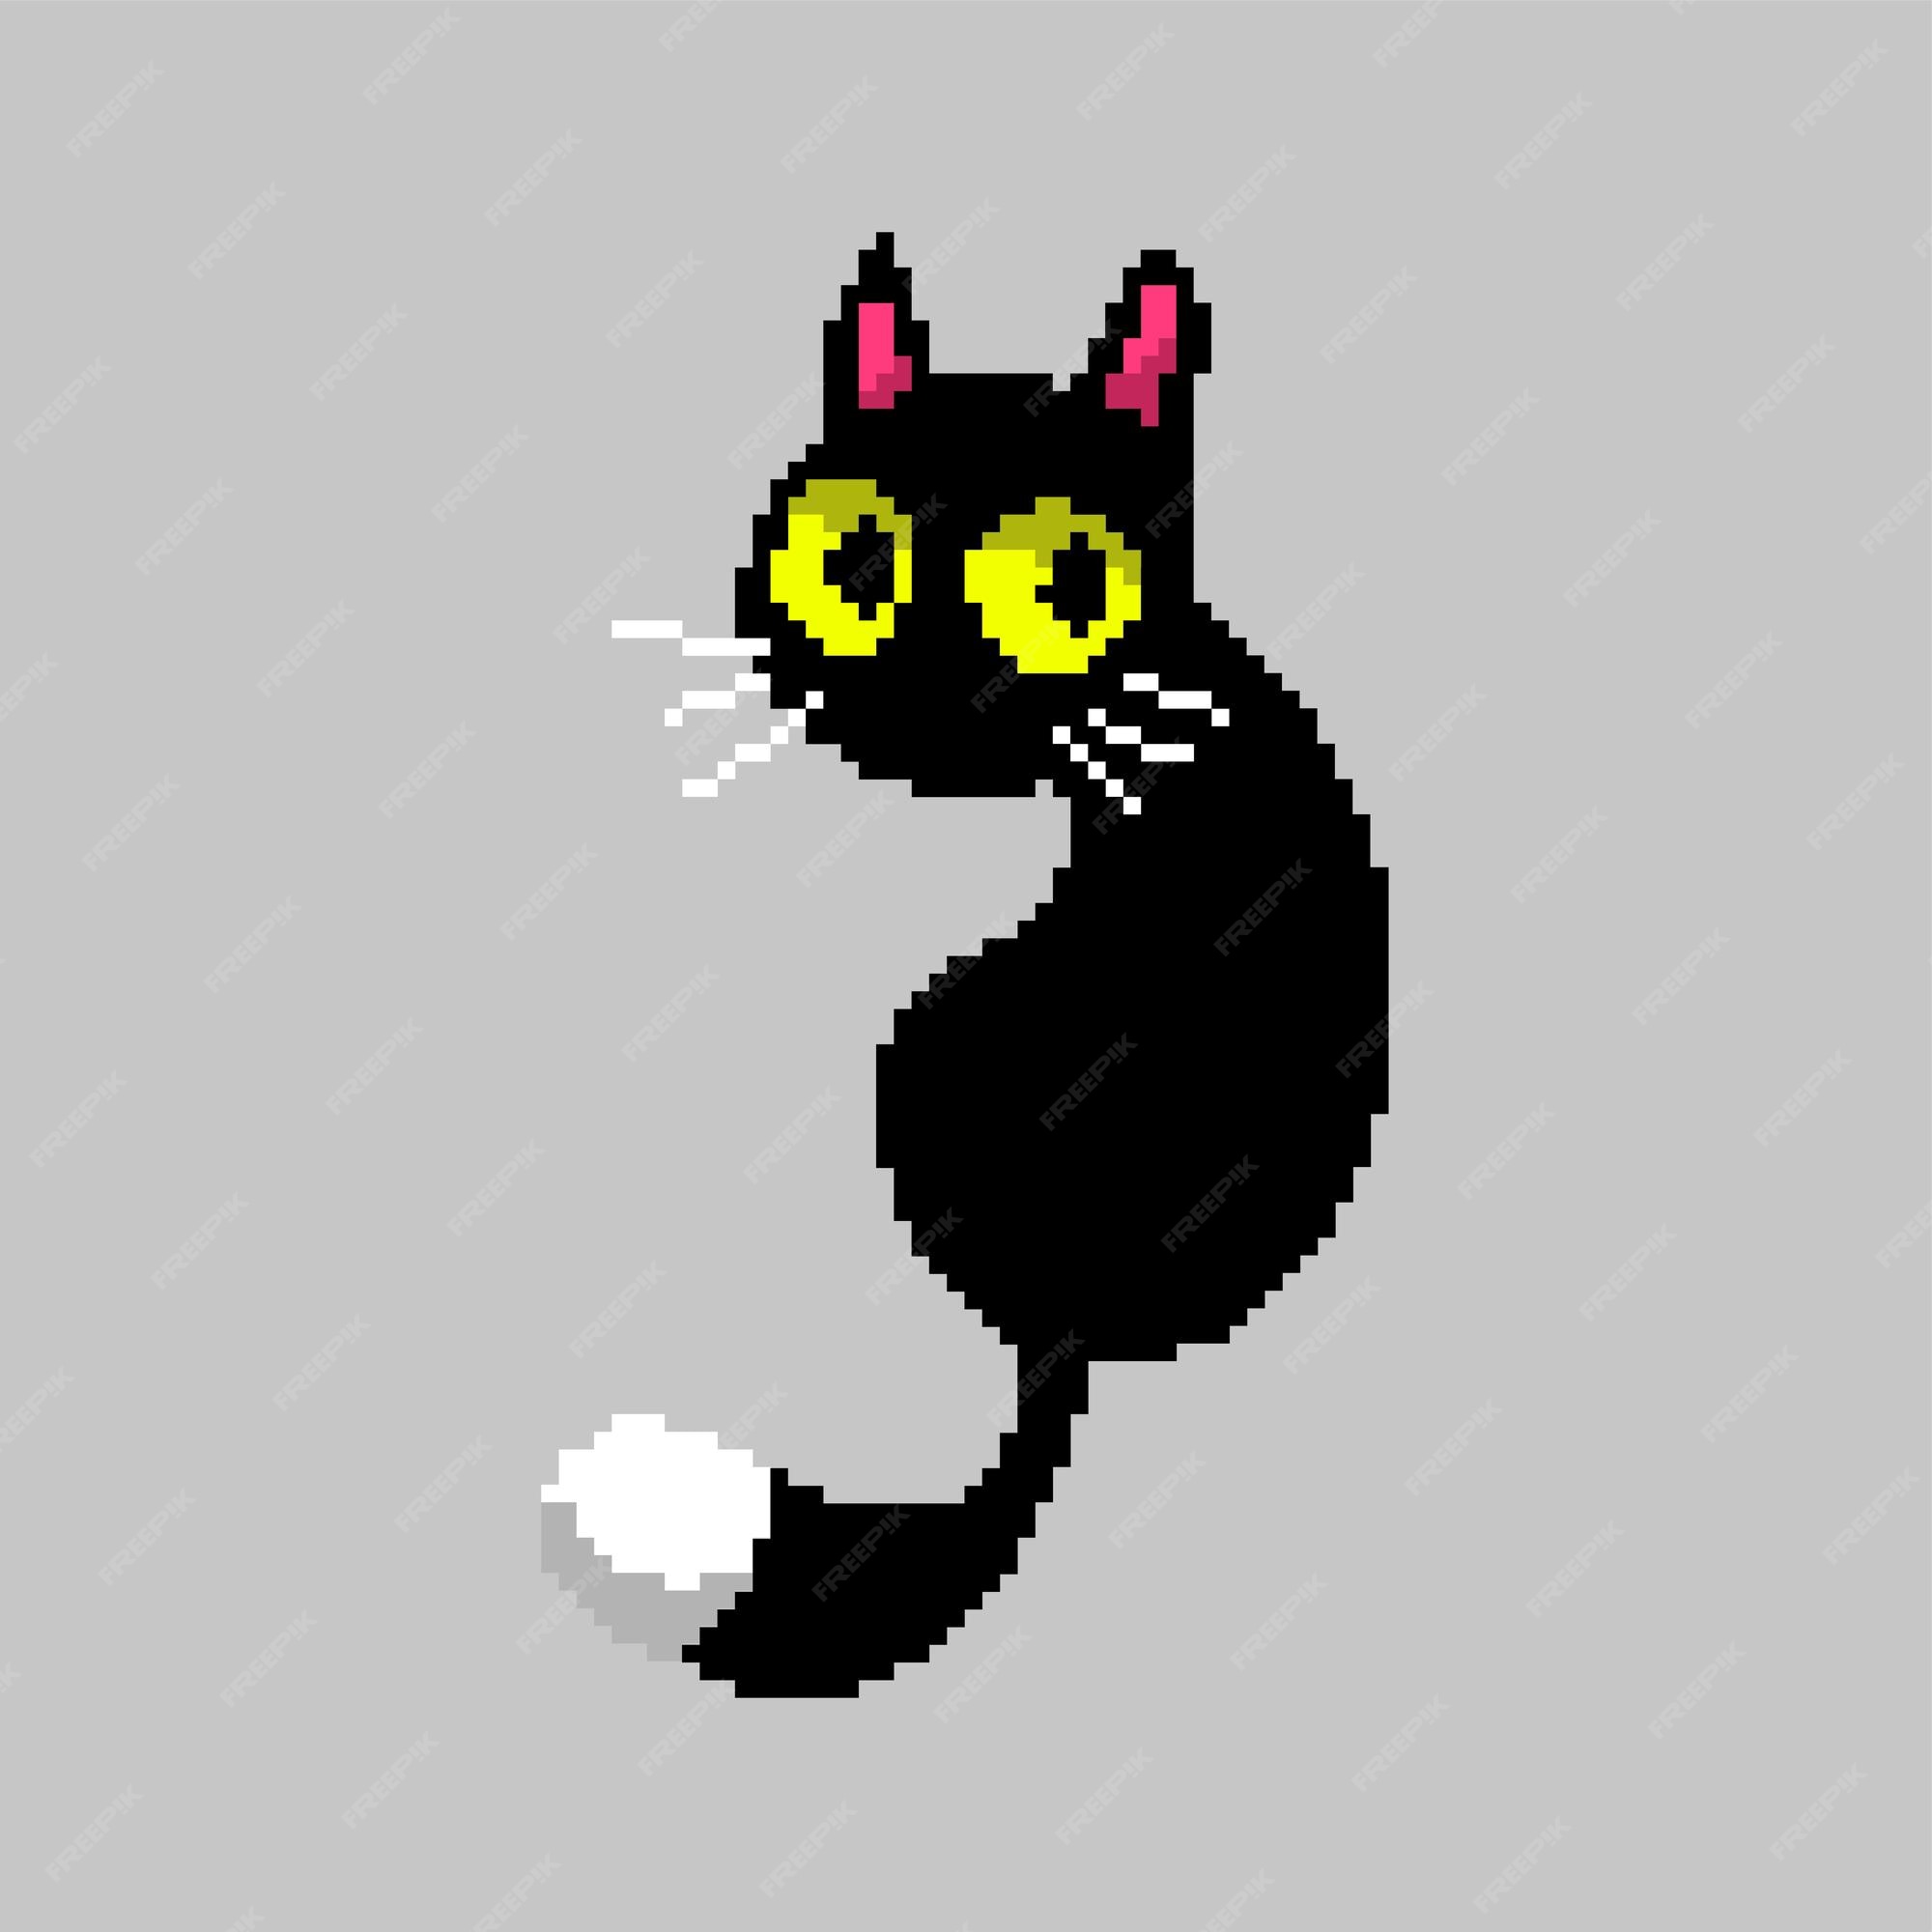 Premium Vector  Cat vector in pixel art style